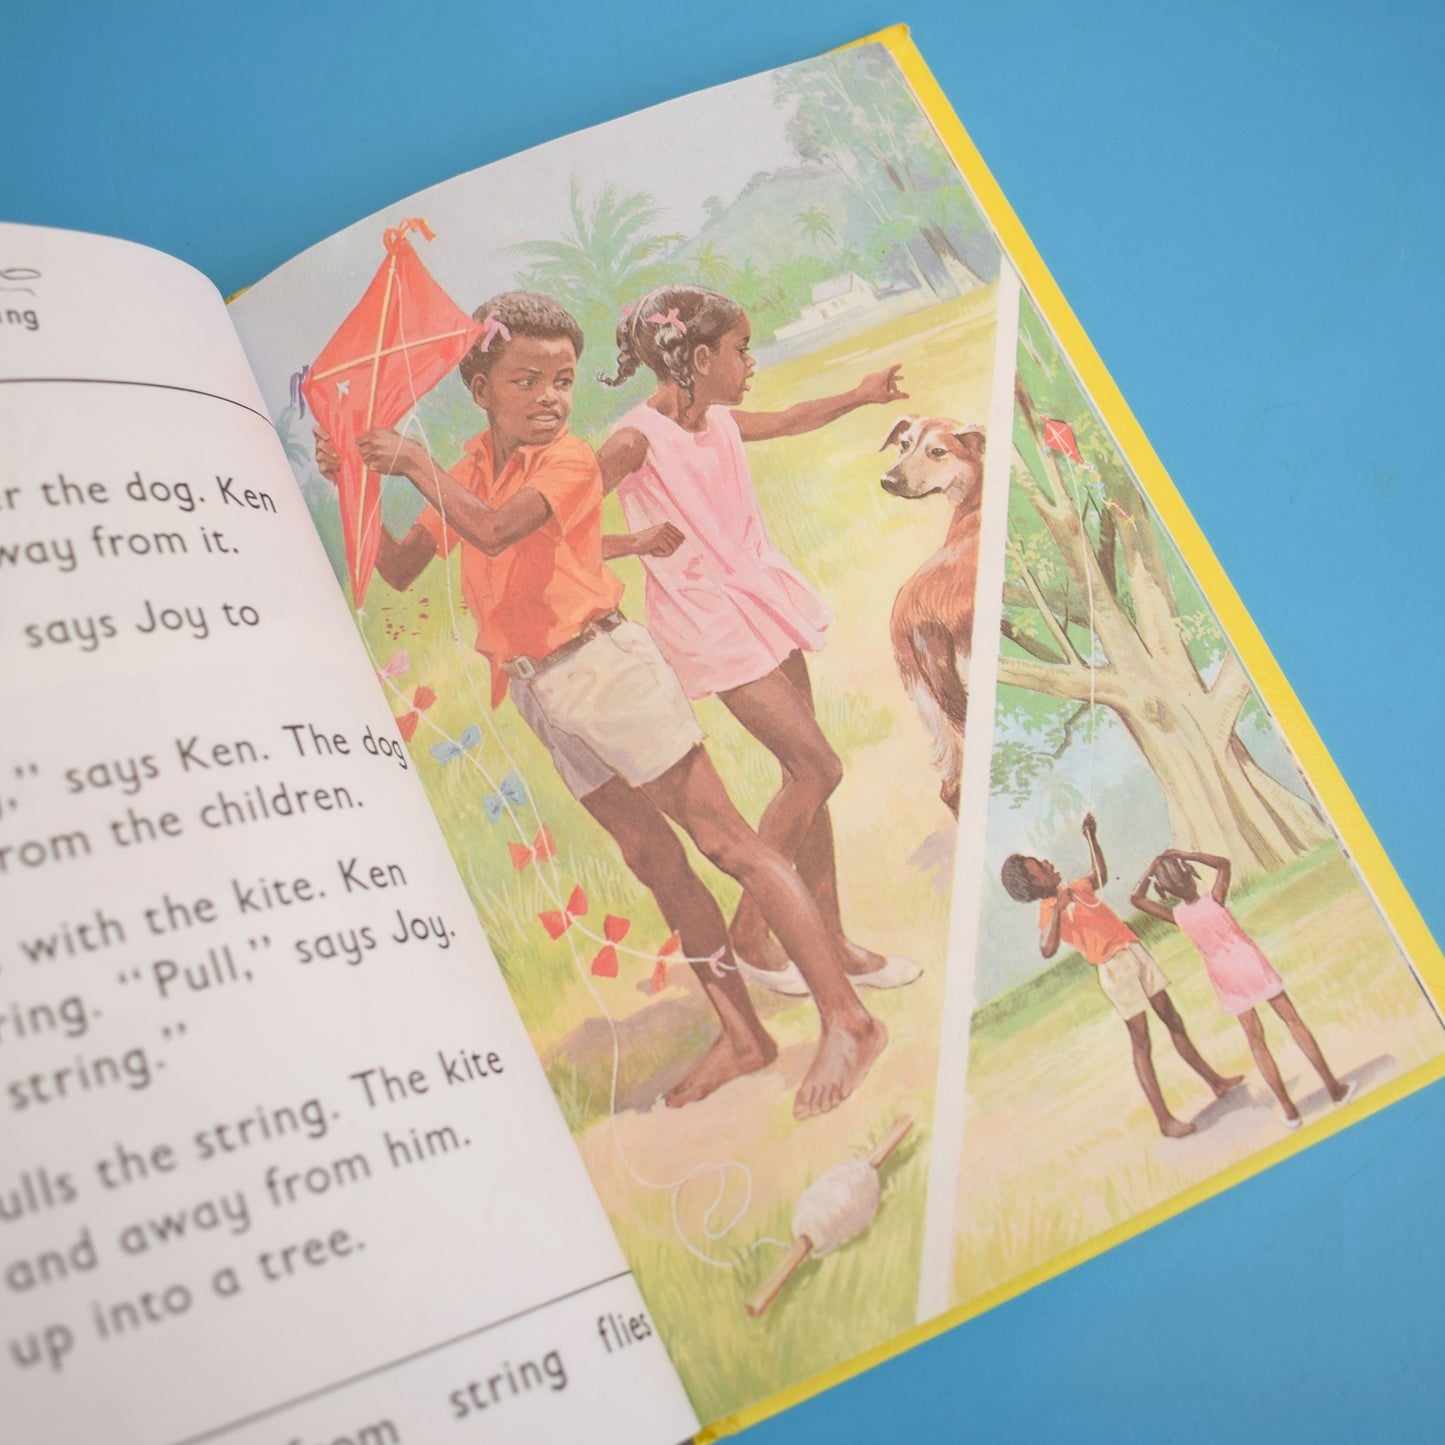 Vintage Ladybird Books - Sunstart Reading Scheme- The Kite